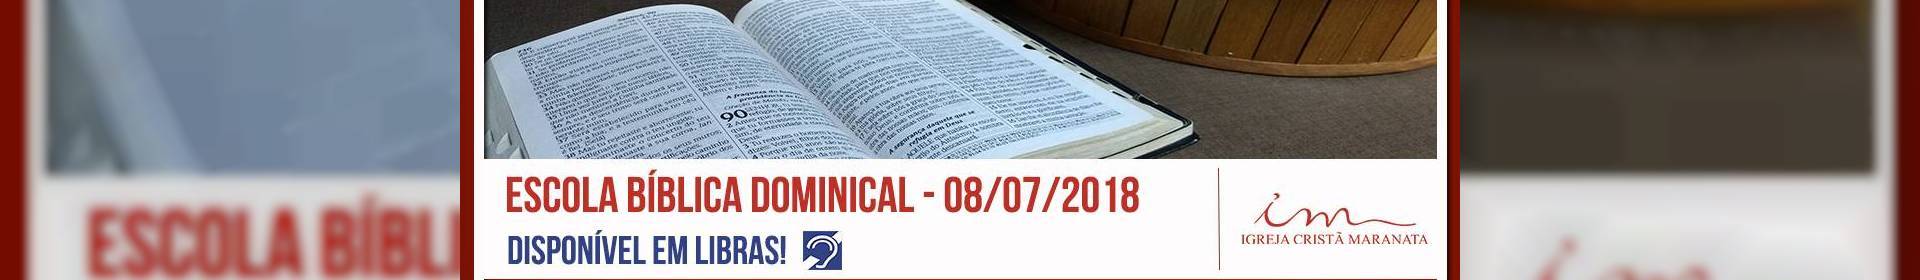 Escola Bíblica Dominical 08/07/2018